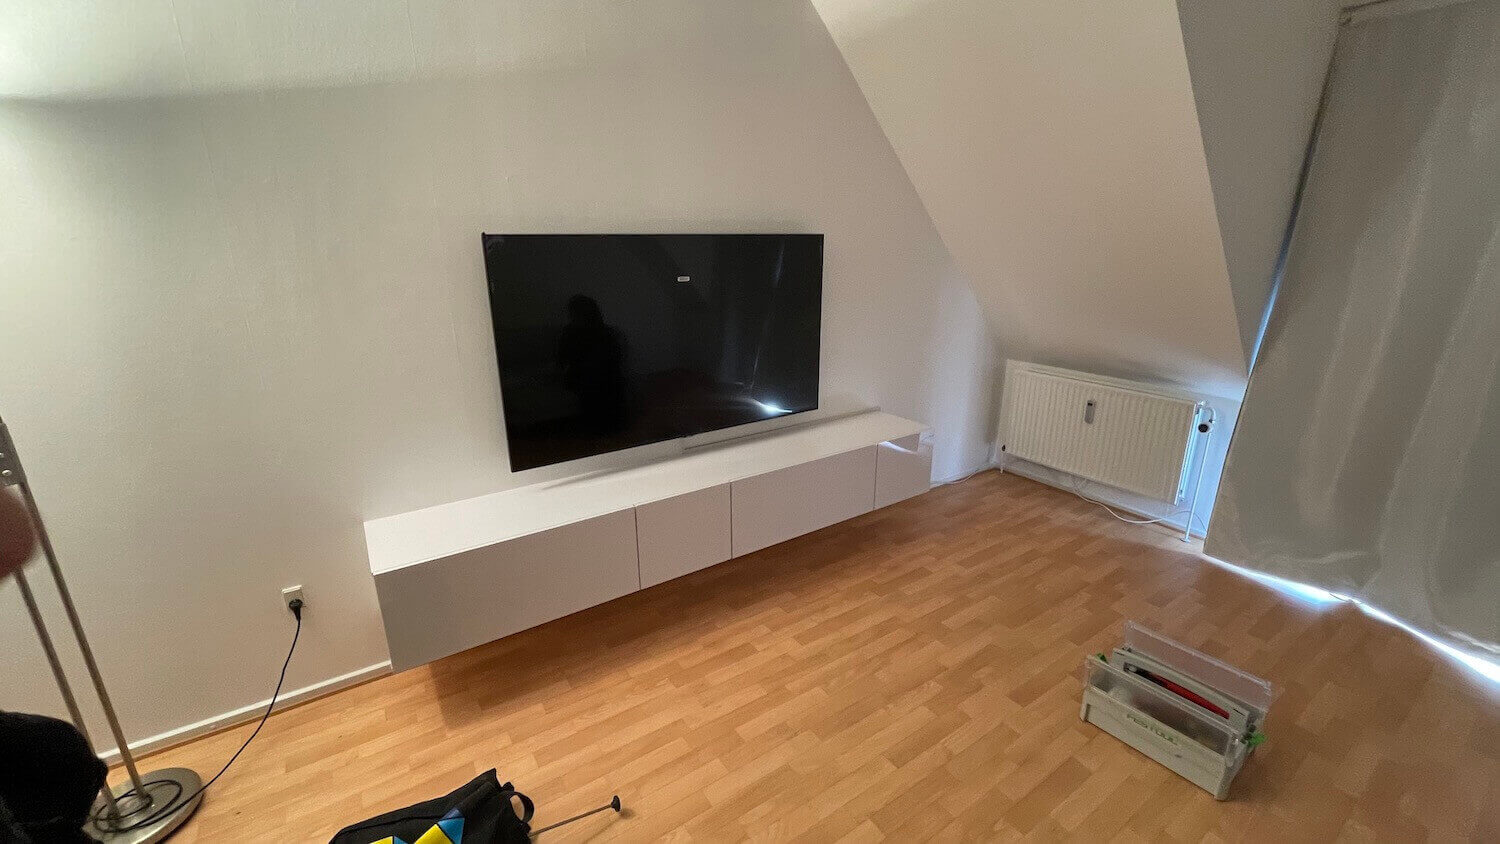 Installation af Samsung TV + TV møbel + kabelbakke